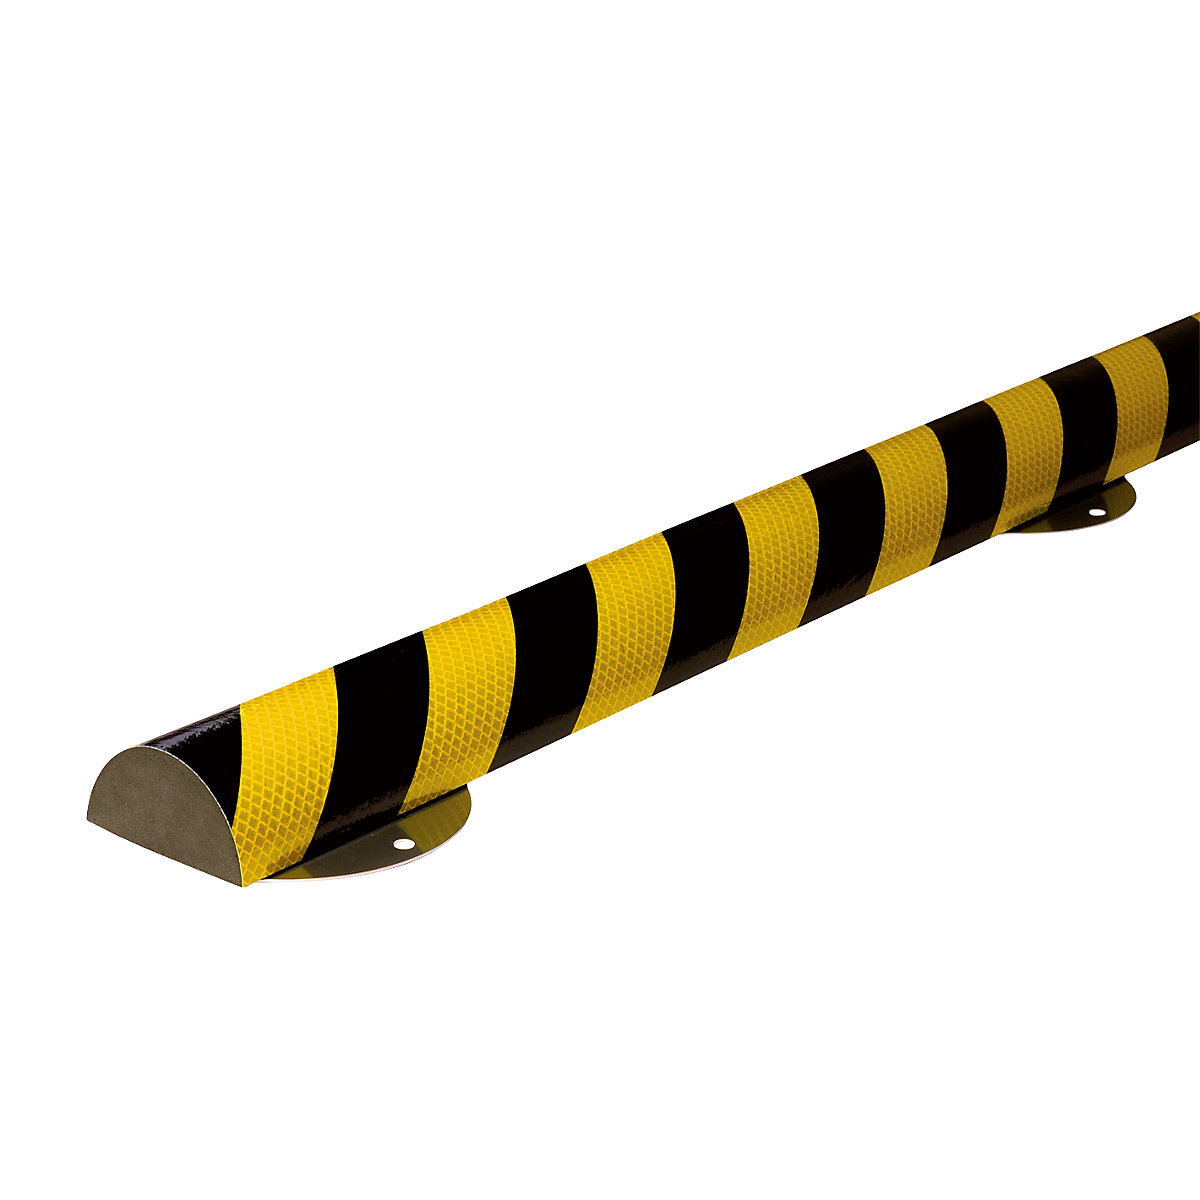 Proteção de superfícies Knuffi® com calha de montagem – SHG, tipo C+, unidade de 1 m, amarelo/preto, refletor-16